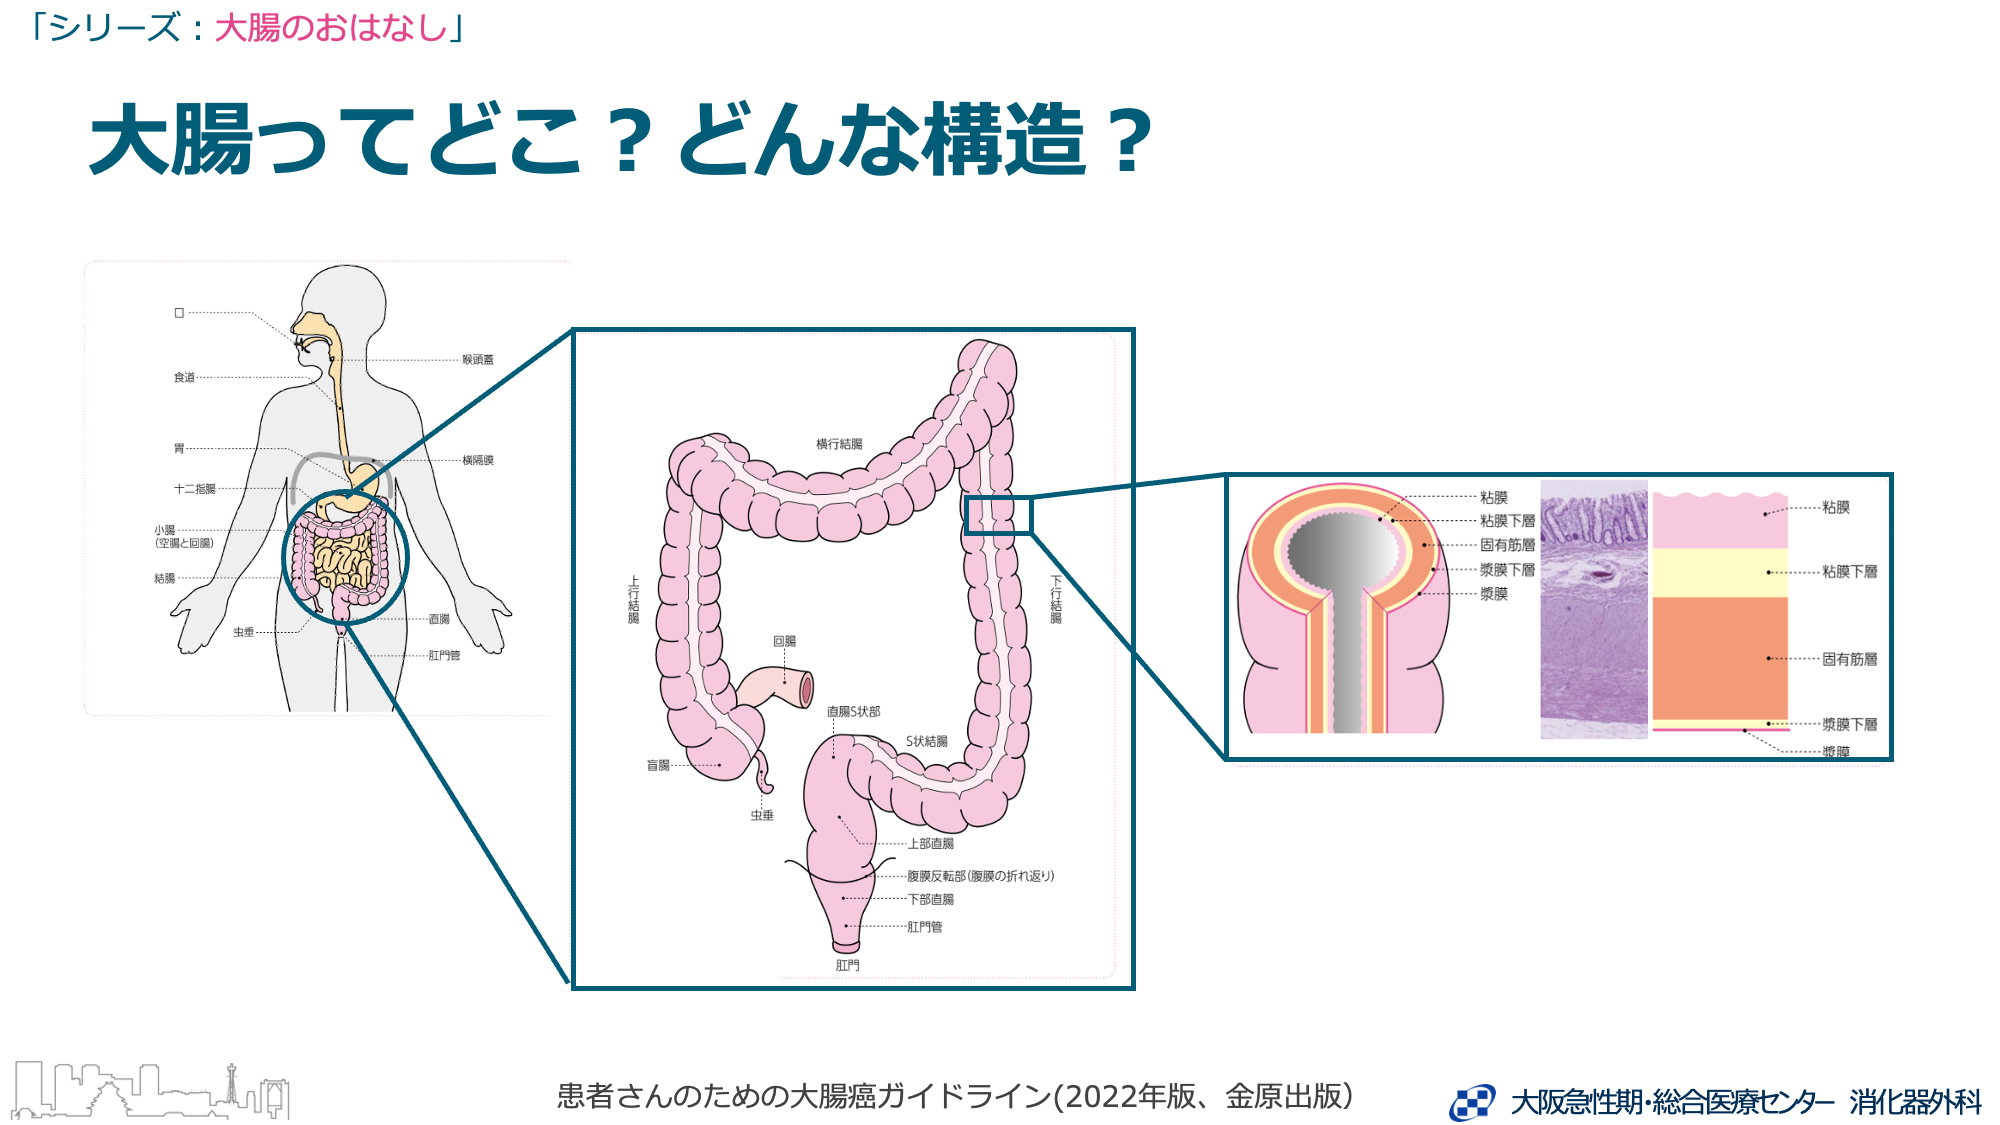 大腸は、食べ物の最後の通り道です。小腸に続いて、右下腹部から始まり、おなかの中をぐるりと大きく回って、肛門につながります。長さは1.5〜2ｍほどの臓器で、結腸（盲腸、上行結腸、横行結腸、下行結腸、S状結腸）と直腸に分かれます。さらに直腸は、直腸S状部と、腹膜反転部を境に上部直腸と下部直腸に分かれます（図１）。大腸の壁は、内側から順に、粘膜、粘膜下層、固有筋層、漿膜しょうまく下層、漿膜の5つの層に分かれています（図２）。 大腸の主な役割は、水分を吸収することです。大腸には栄養素の消化吸収作用はほとんどありません。小腸で消化吸収された食物の残りは、大腸で水分を吸い取られ、肛門に至るまでにだんだんと固形の便になっていきます。大腸での水分の吸収が不十分だと、軟便になったり、下痢を起こしたりします。